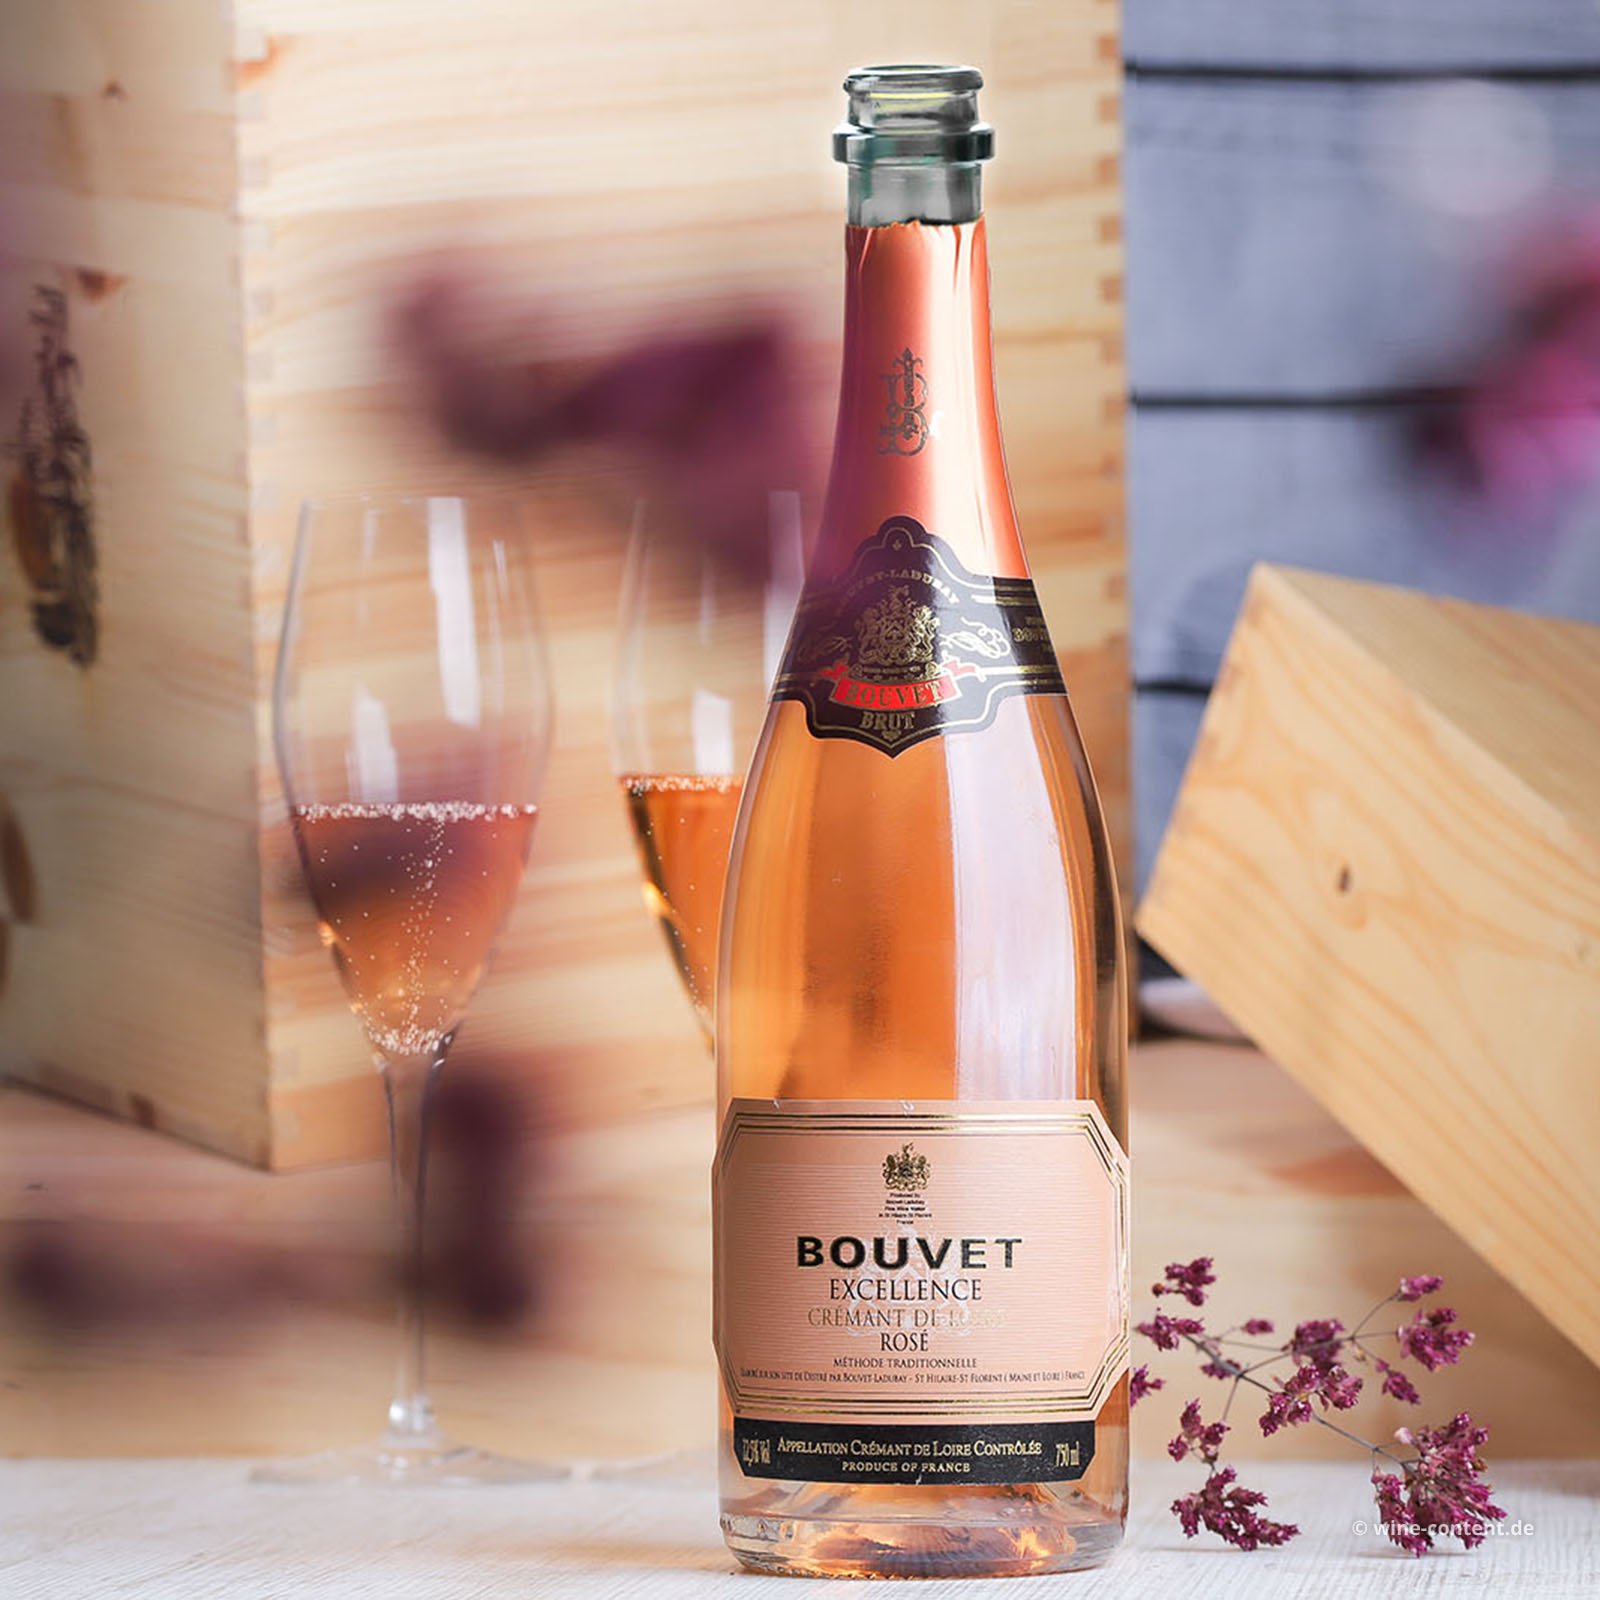 Bouvet Ladubay - Brut Crémant Rosé Excellence Loire de